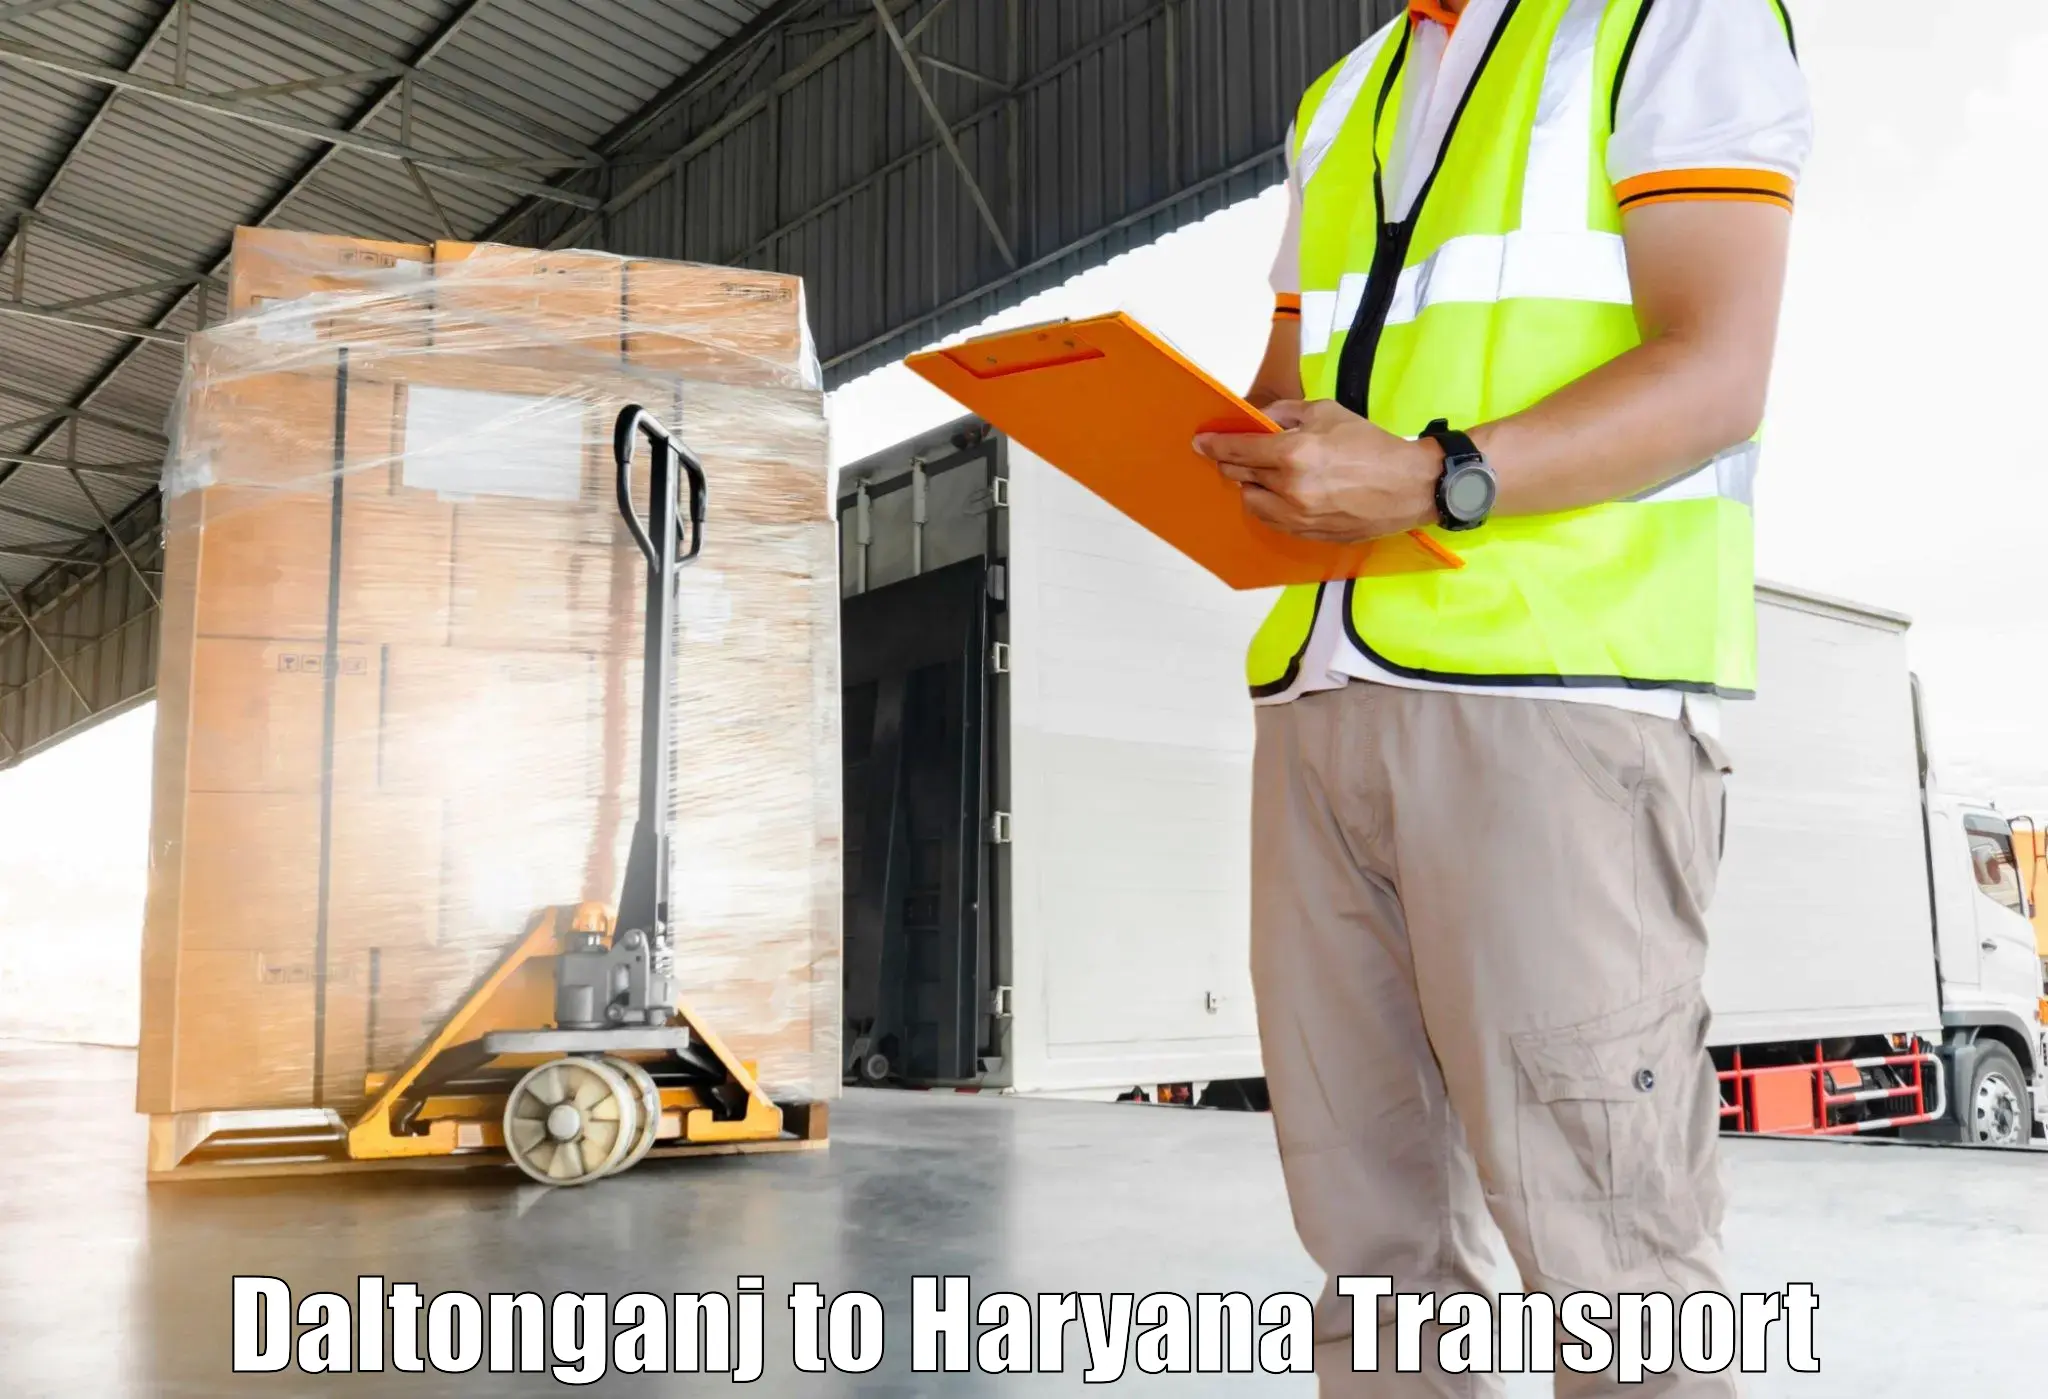 Truck transport companies in India Daltonganj to Barwala